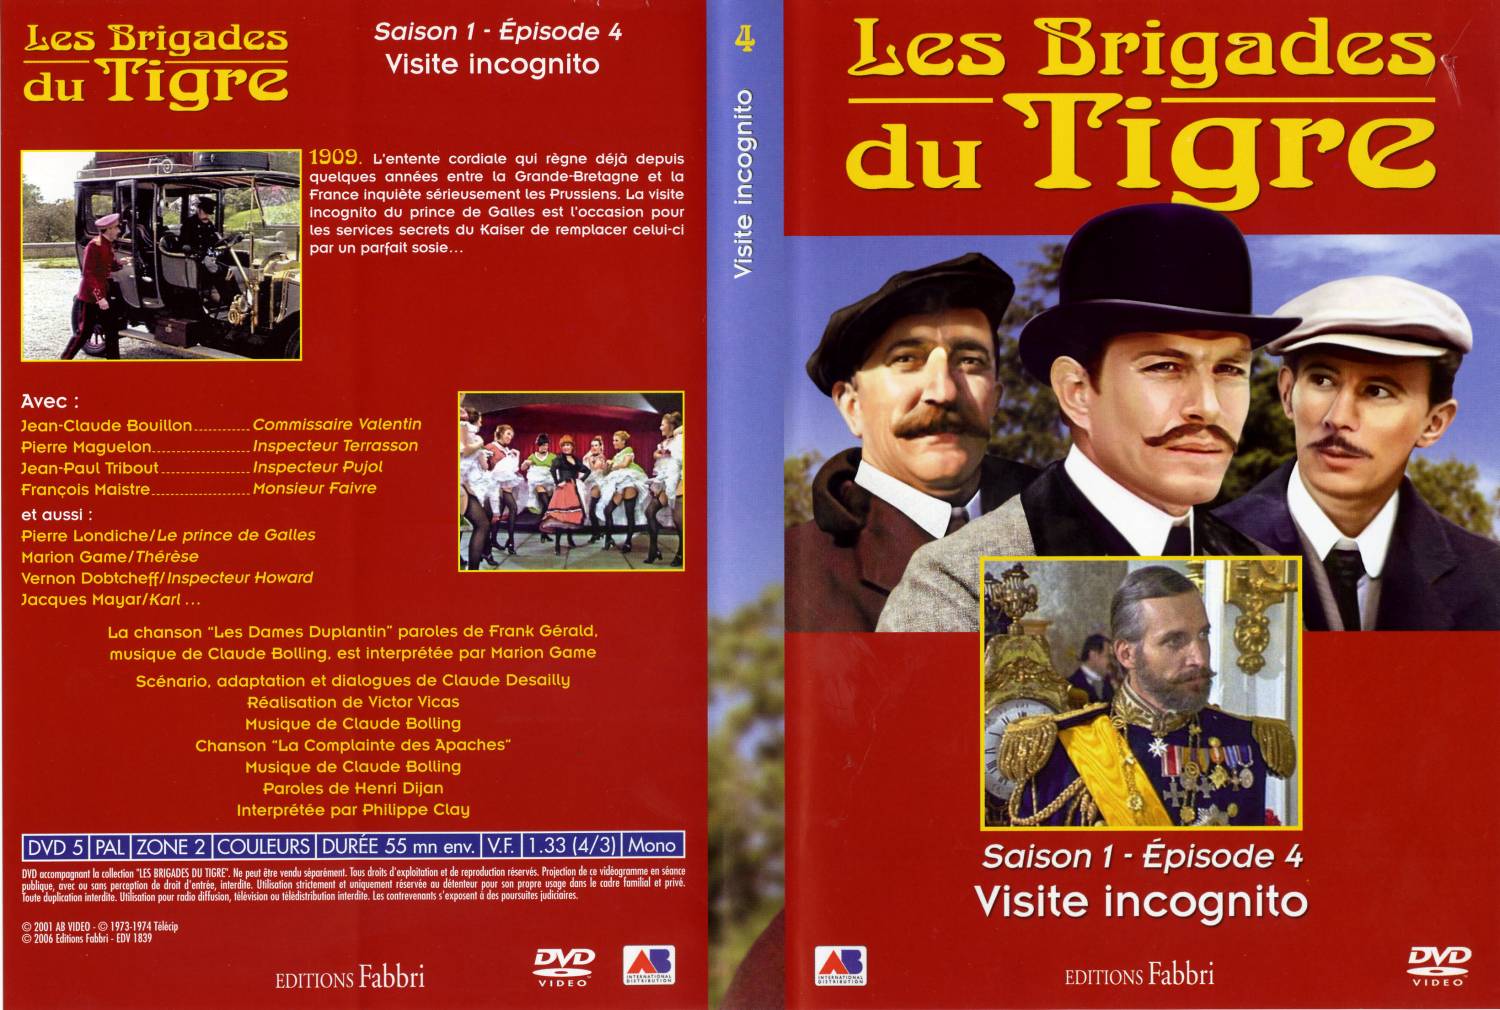 Jaquette DVD Les brigades du tigre saison 1 pisode 4